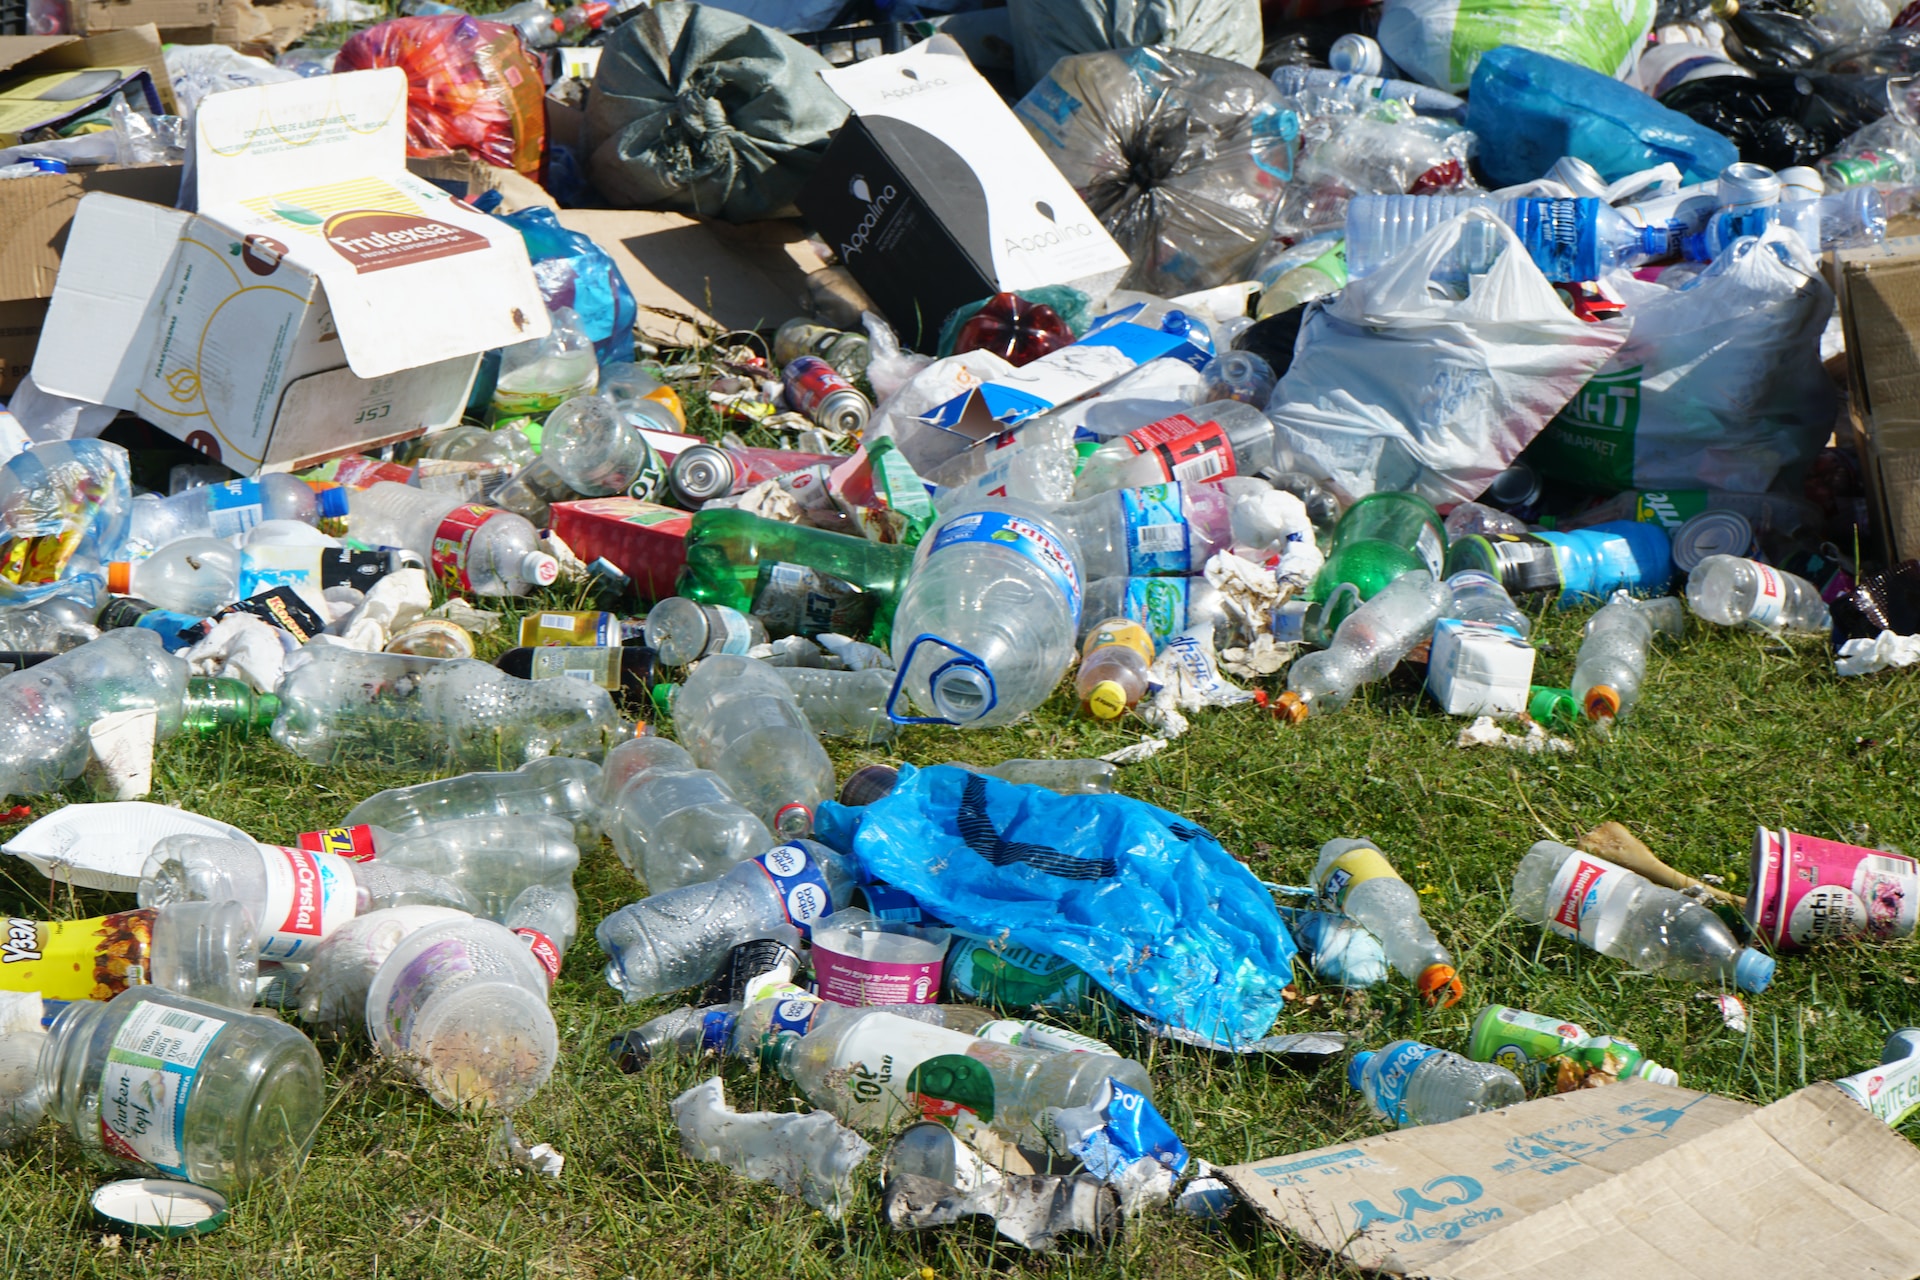 La clasificación de desechos ayuda al reciclaje, por lo que se recomienda separar la basura orgánica de la inorgánica. (Foto Prensa Libre: Ariungoo Batzorig en Unsplash).